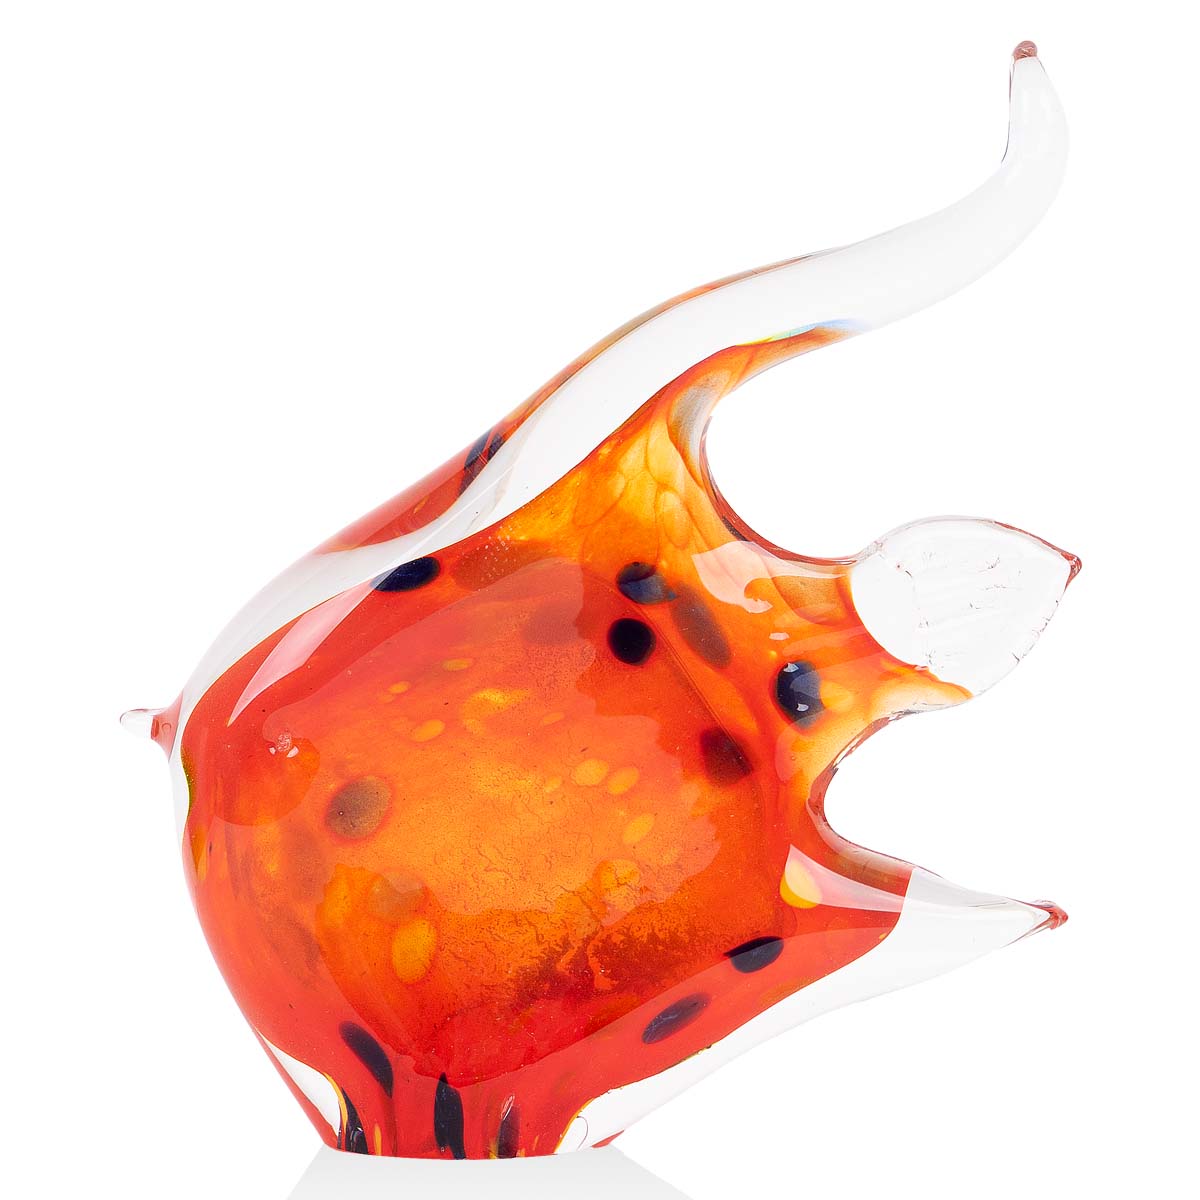 Фигурка цветная гутной работы Zapel Рыбка Скалярия 14см давай дружить золотая рыбка джилл пейдж